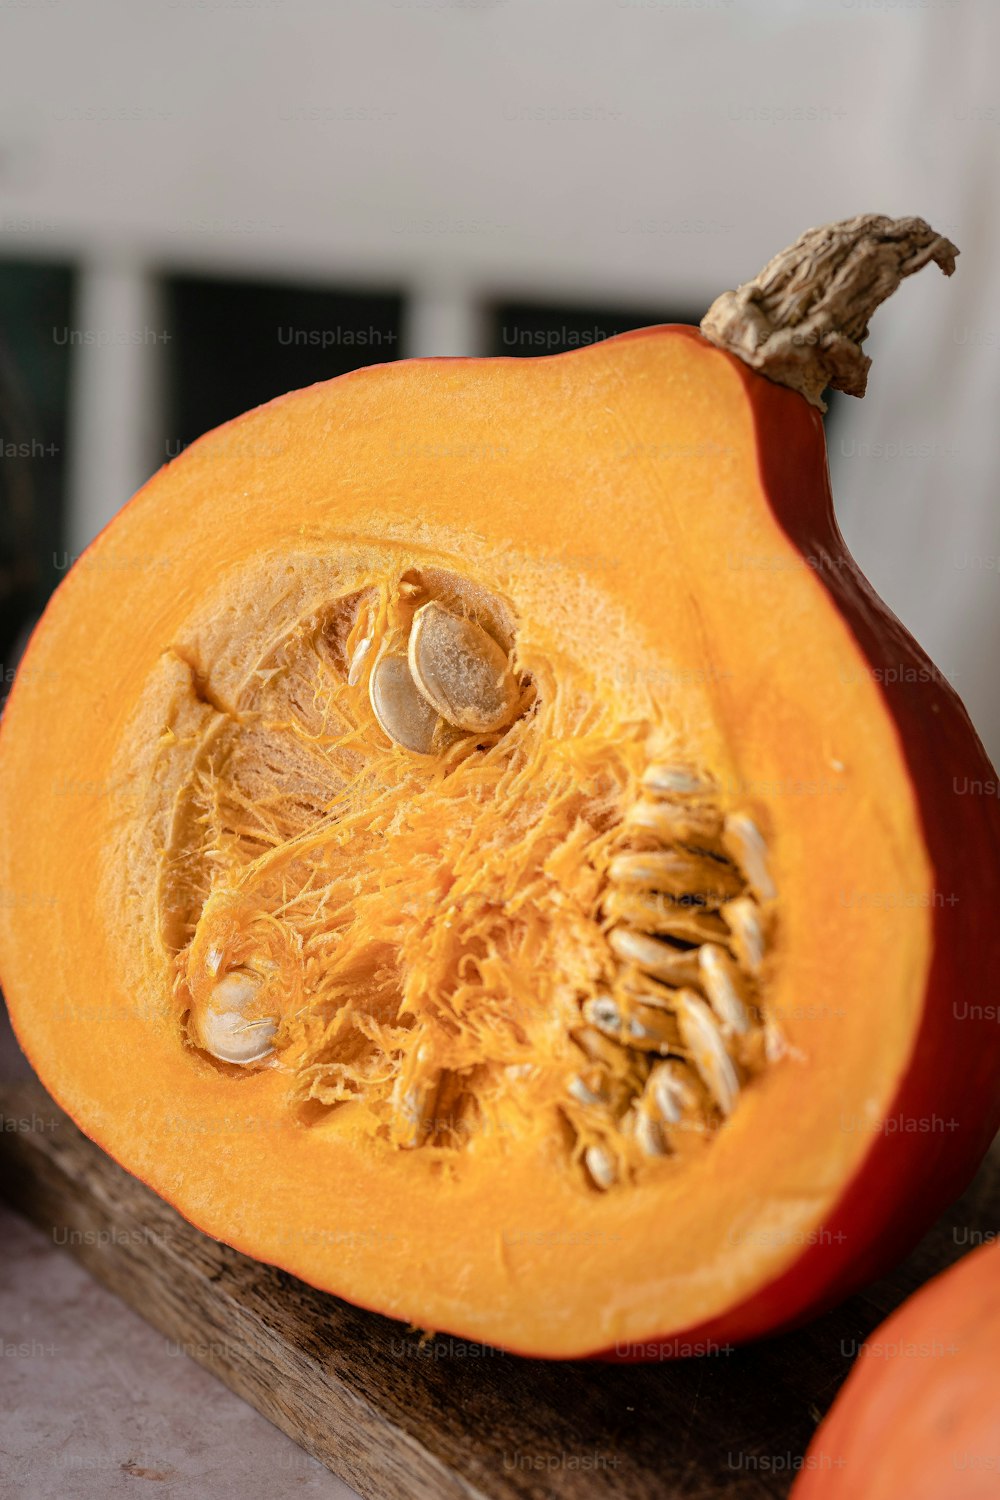 a close up of a pumpkin cut in half